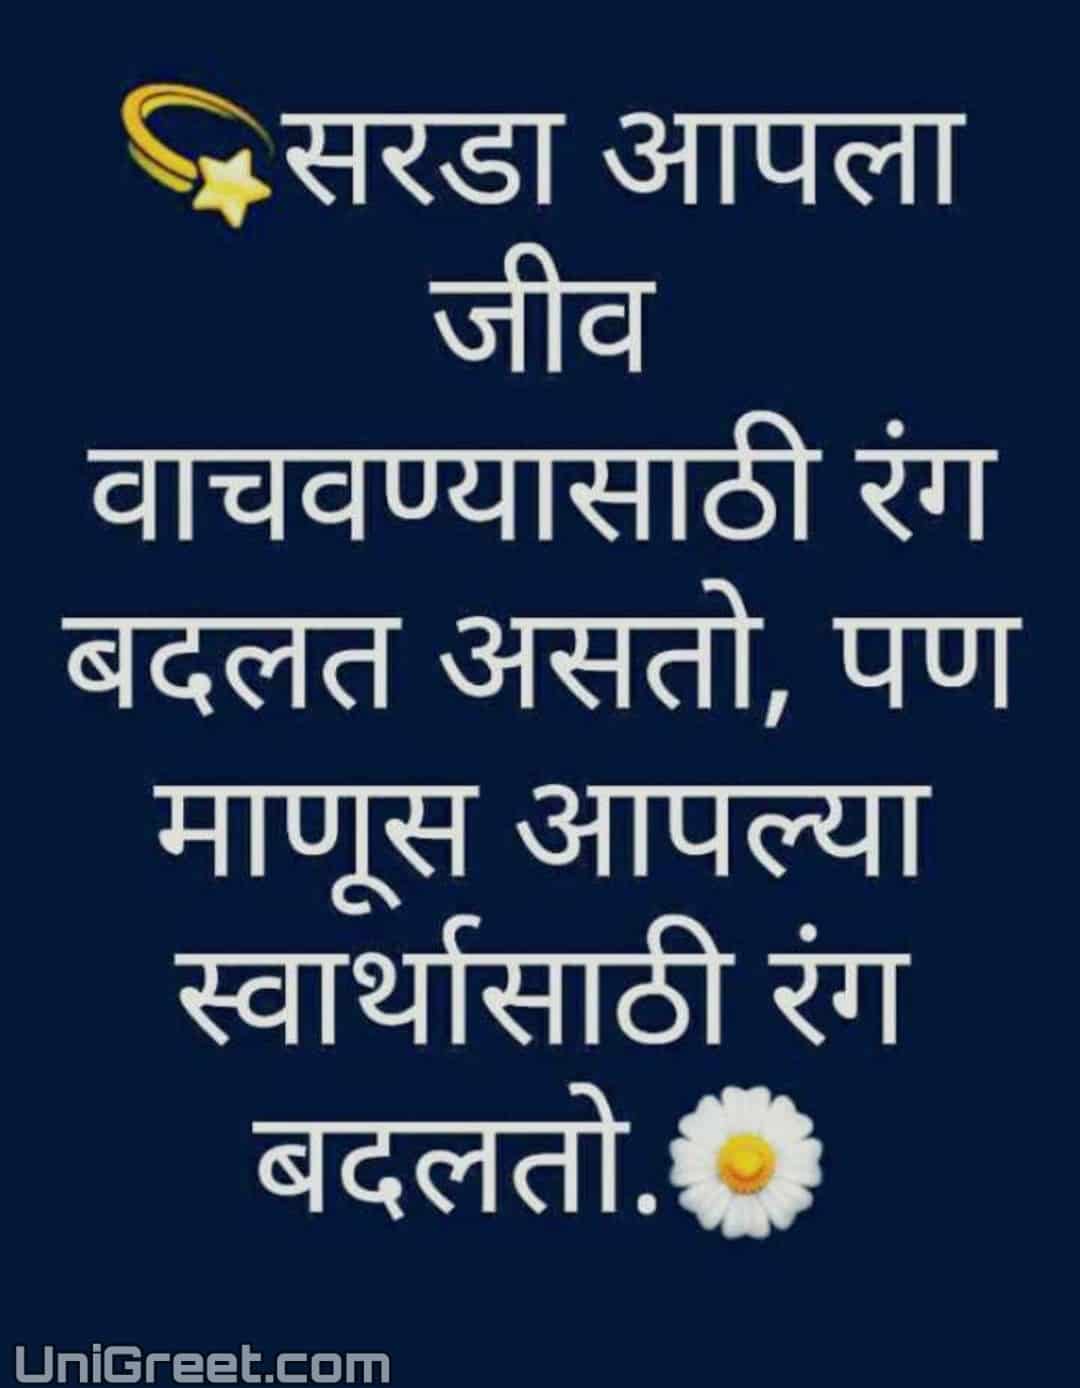 New Attitude Marathi Instagram Caption Status Quotes Images For